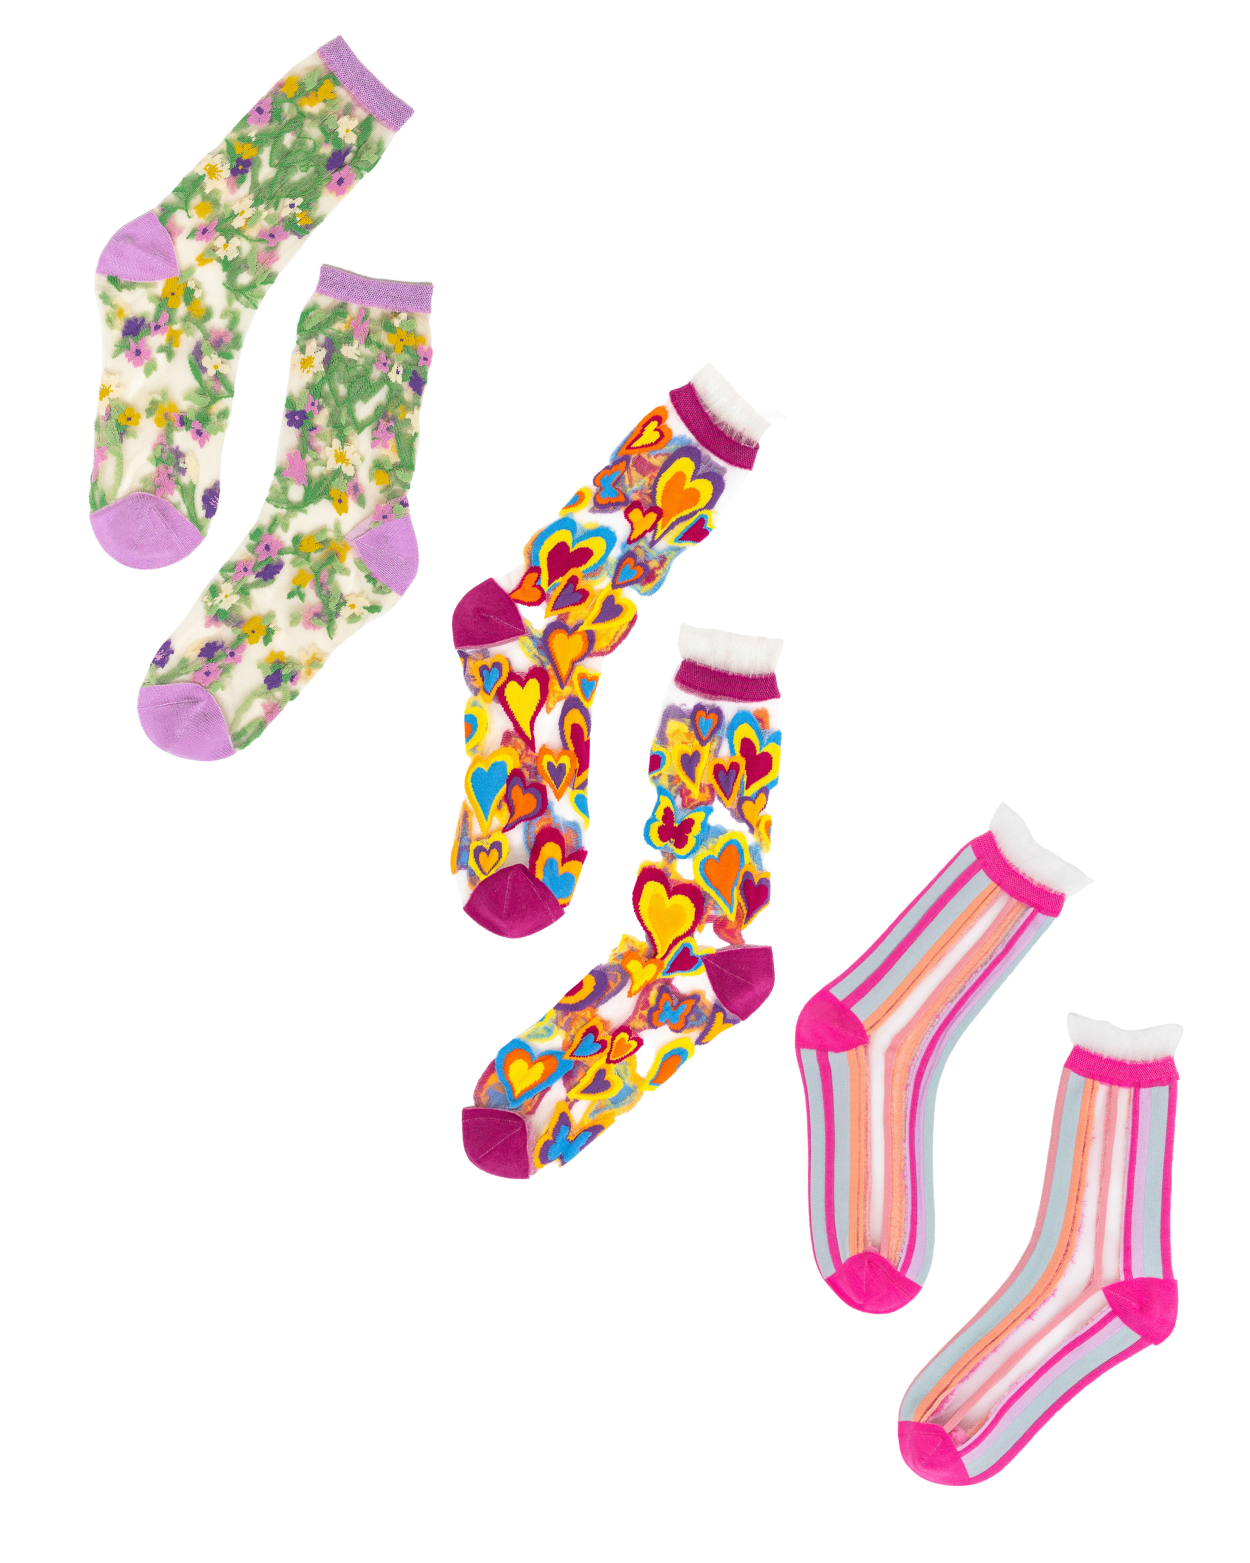 Taylor Swiss Socks, Funny Socks, Swiftie Merch, Foodie Gift, Taylor Swift  Socks, Novelty Socks, Swiftie Socks, Punny Gift, Gag Gift for Her 